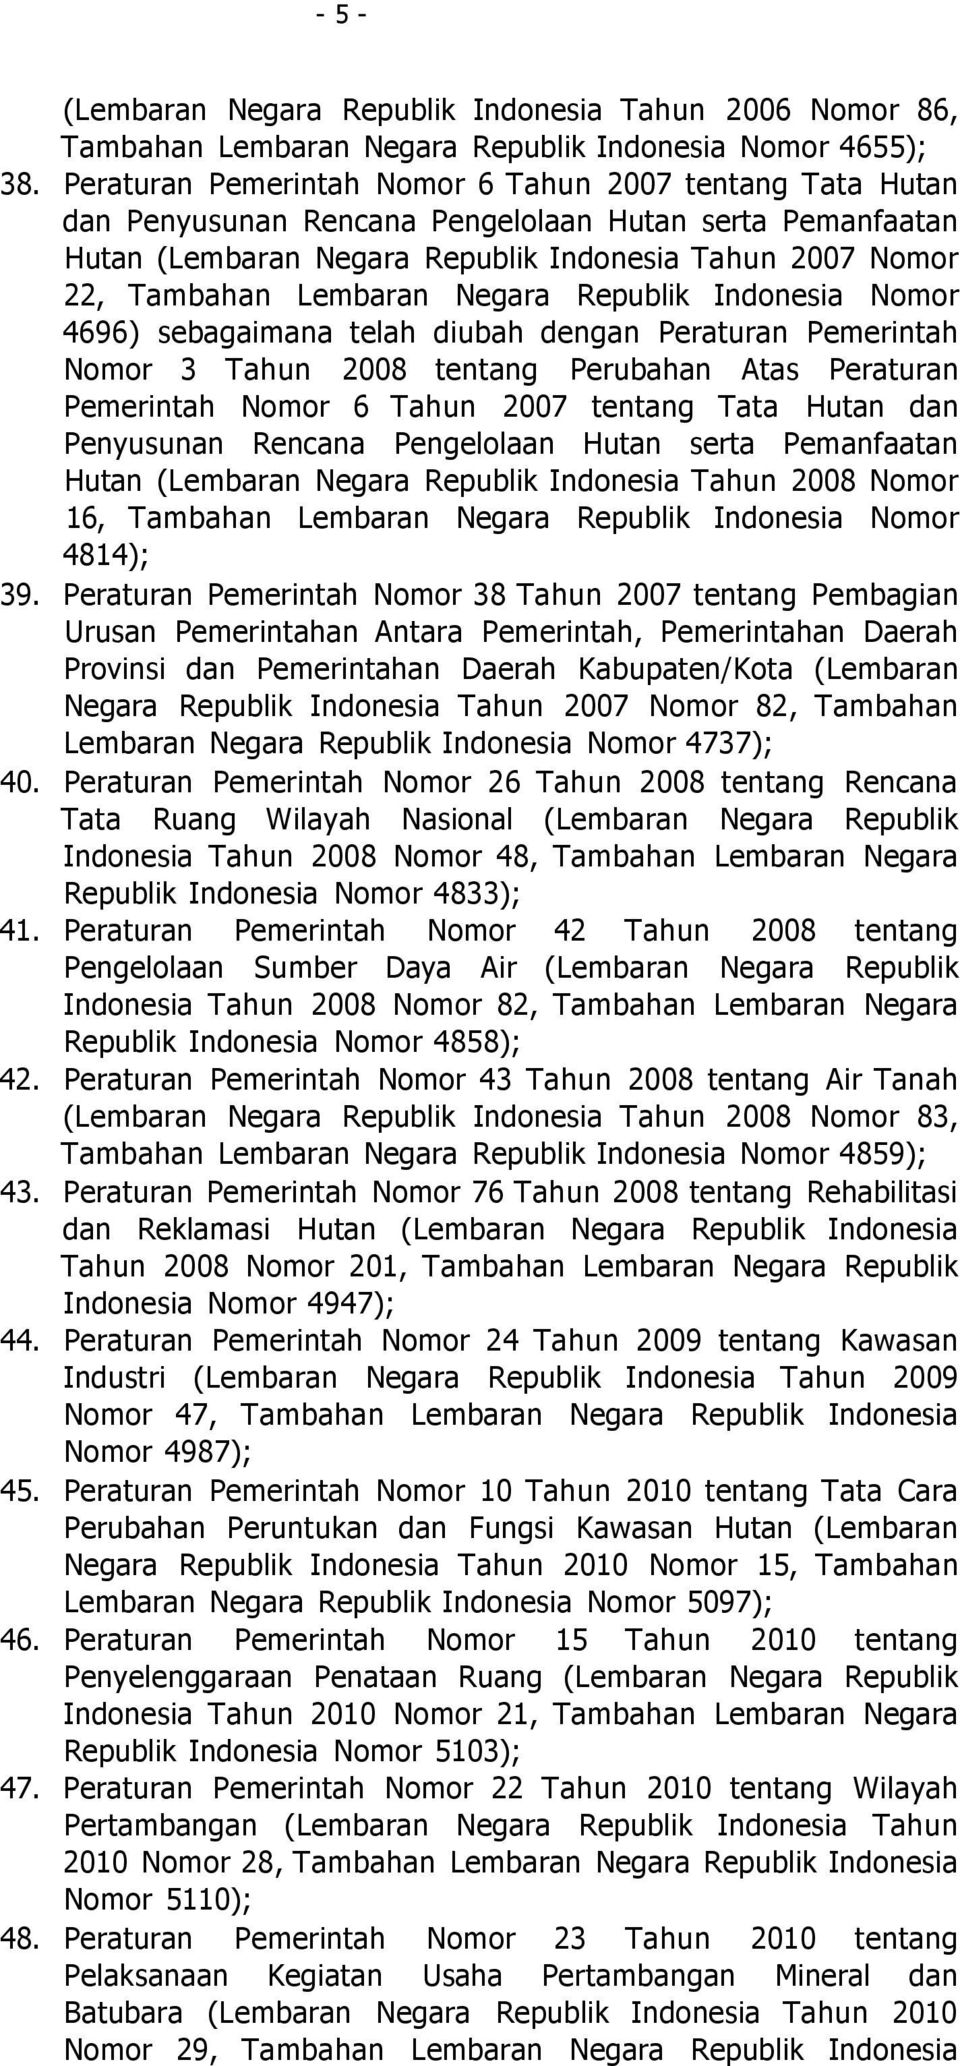 Negara Republik Indonesia Nomor 4696) sebagaimana telah diubah dengan Peraturan Pemerintah Nomor 3 Tahun 2008 tentang Perubahan Atas Peraturan Pemerintah Nomor 6 Tahun 2007 tentang Tata Hutan dan